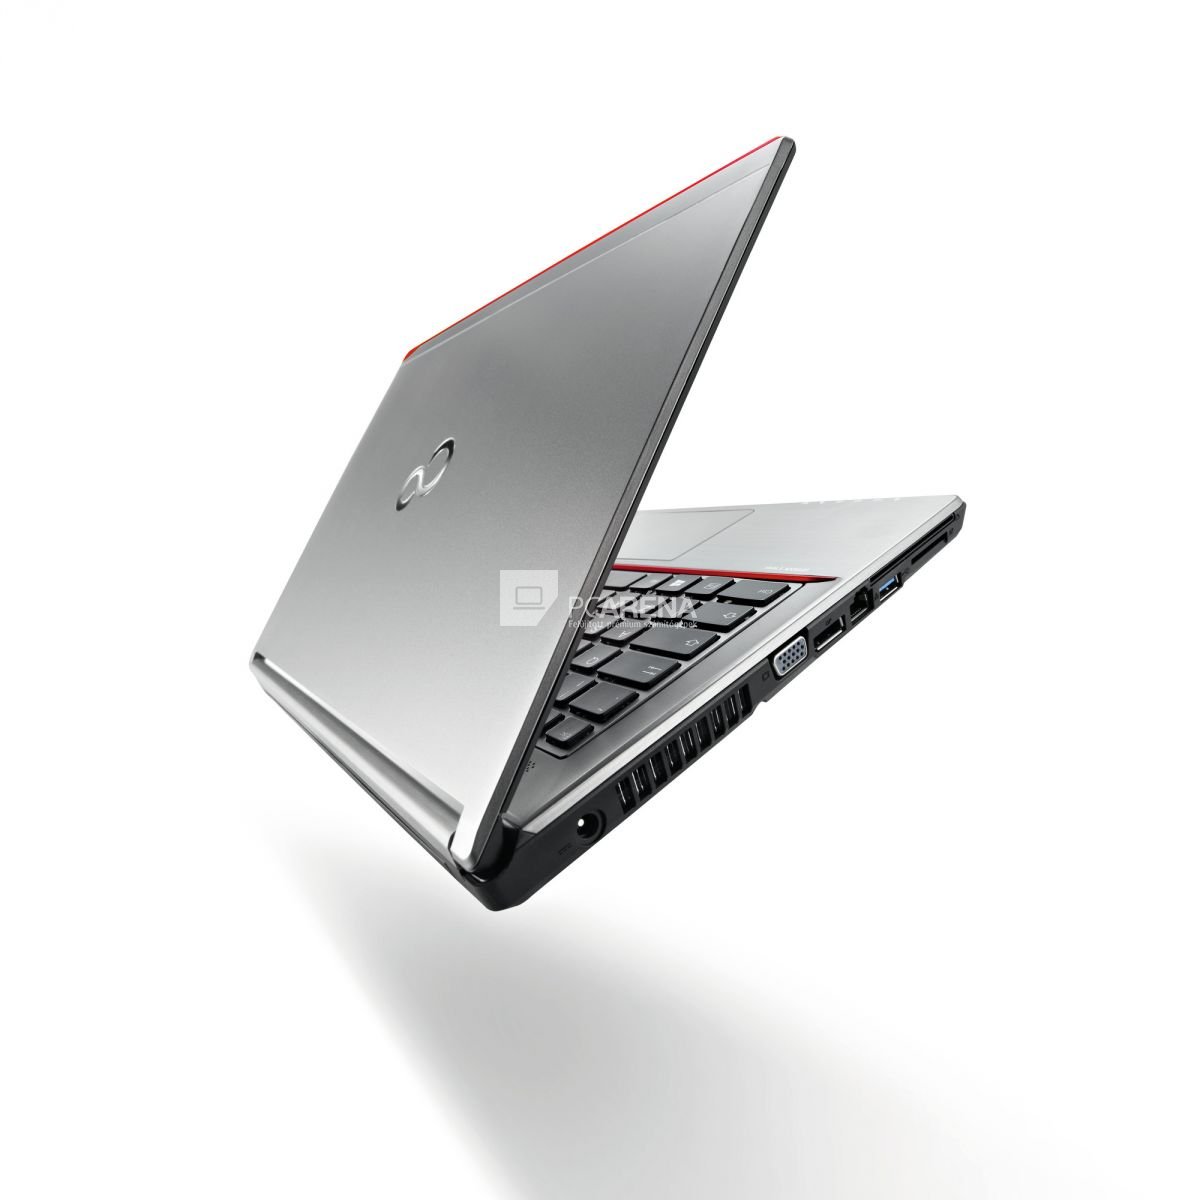 Fujitsu Lifebook E736 (szépséghibás) laptop